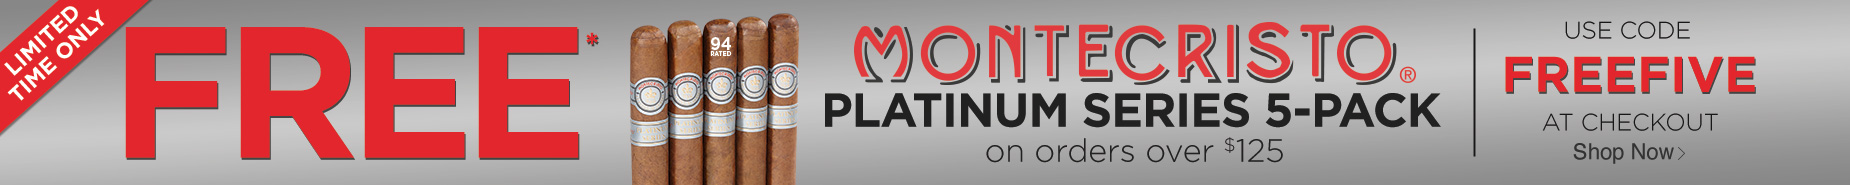 5 FREE Montecristo on Orders $125+. Code: FREEFIVE